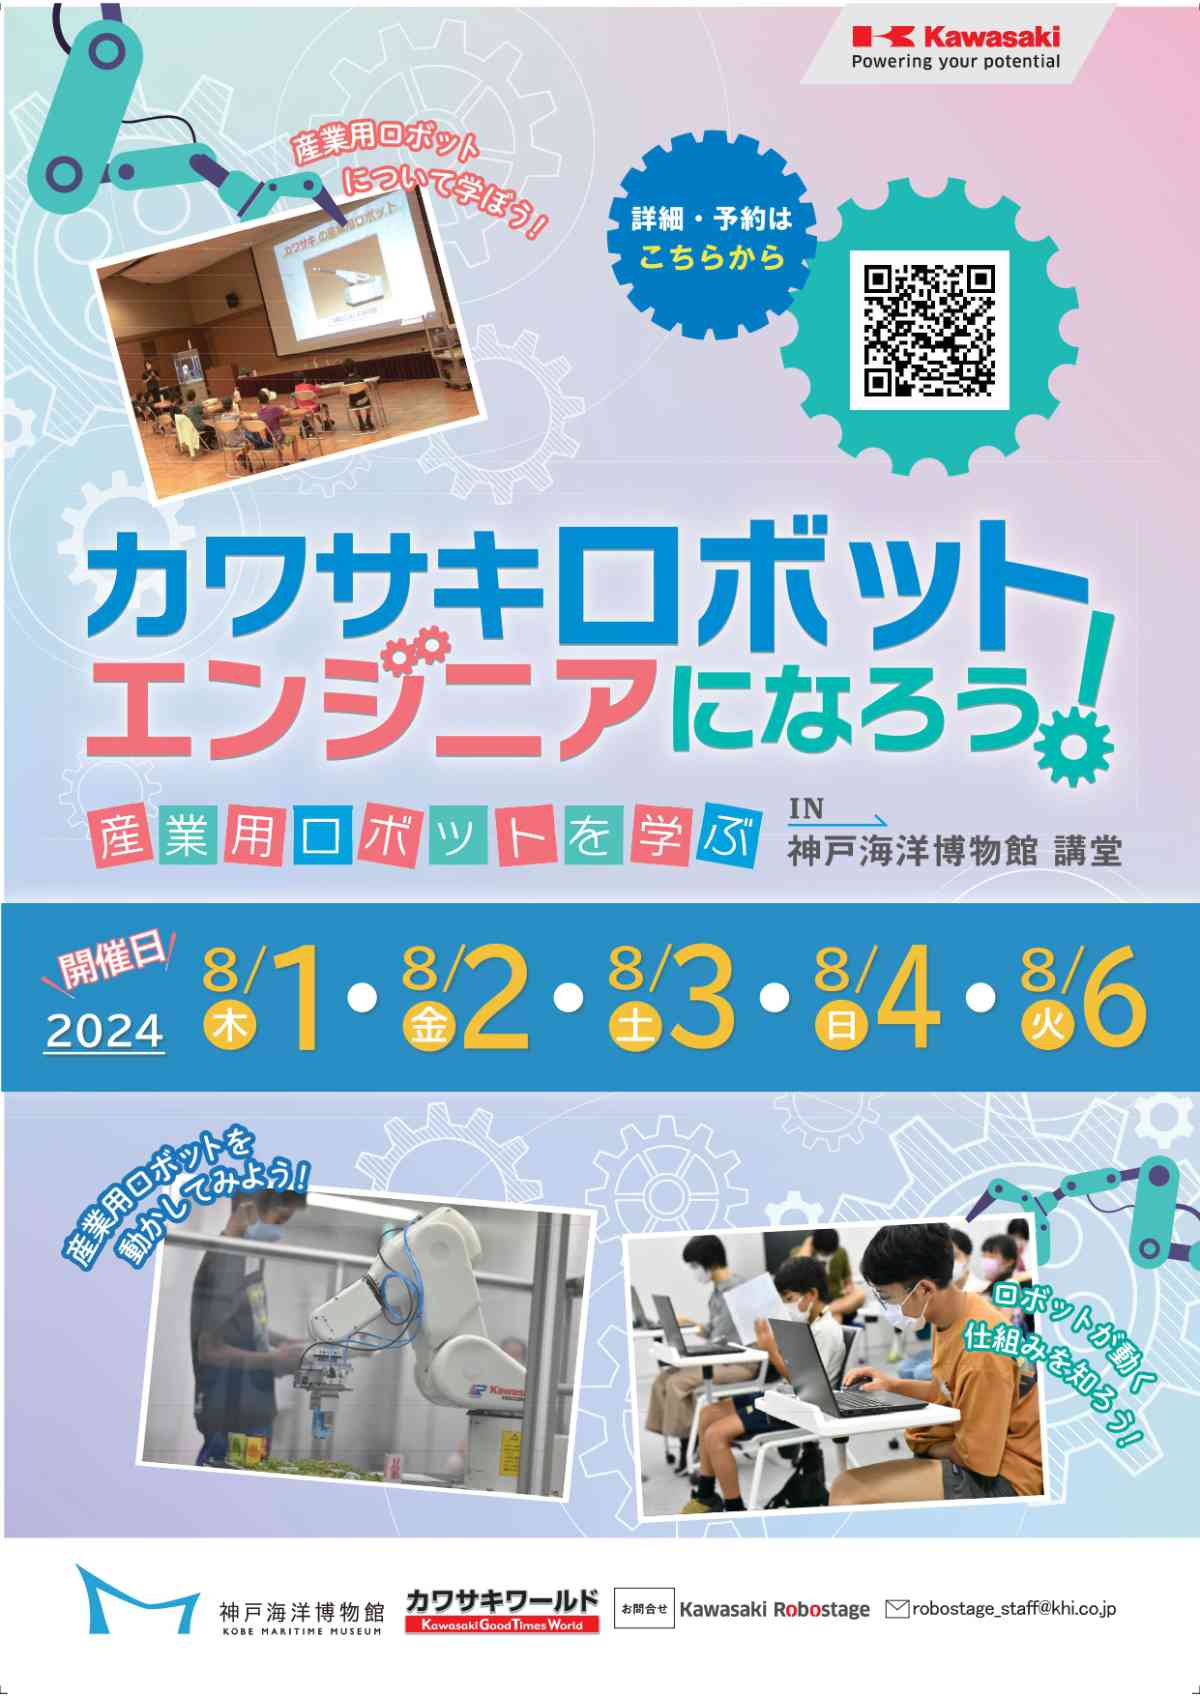 神戸海洋博物館で「カワサキロボットエンジニアになろう！」開催　神戸市 [画像]